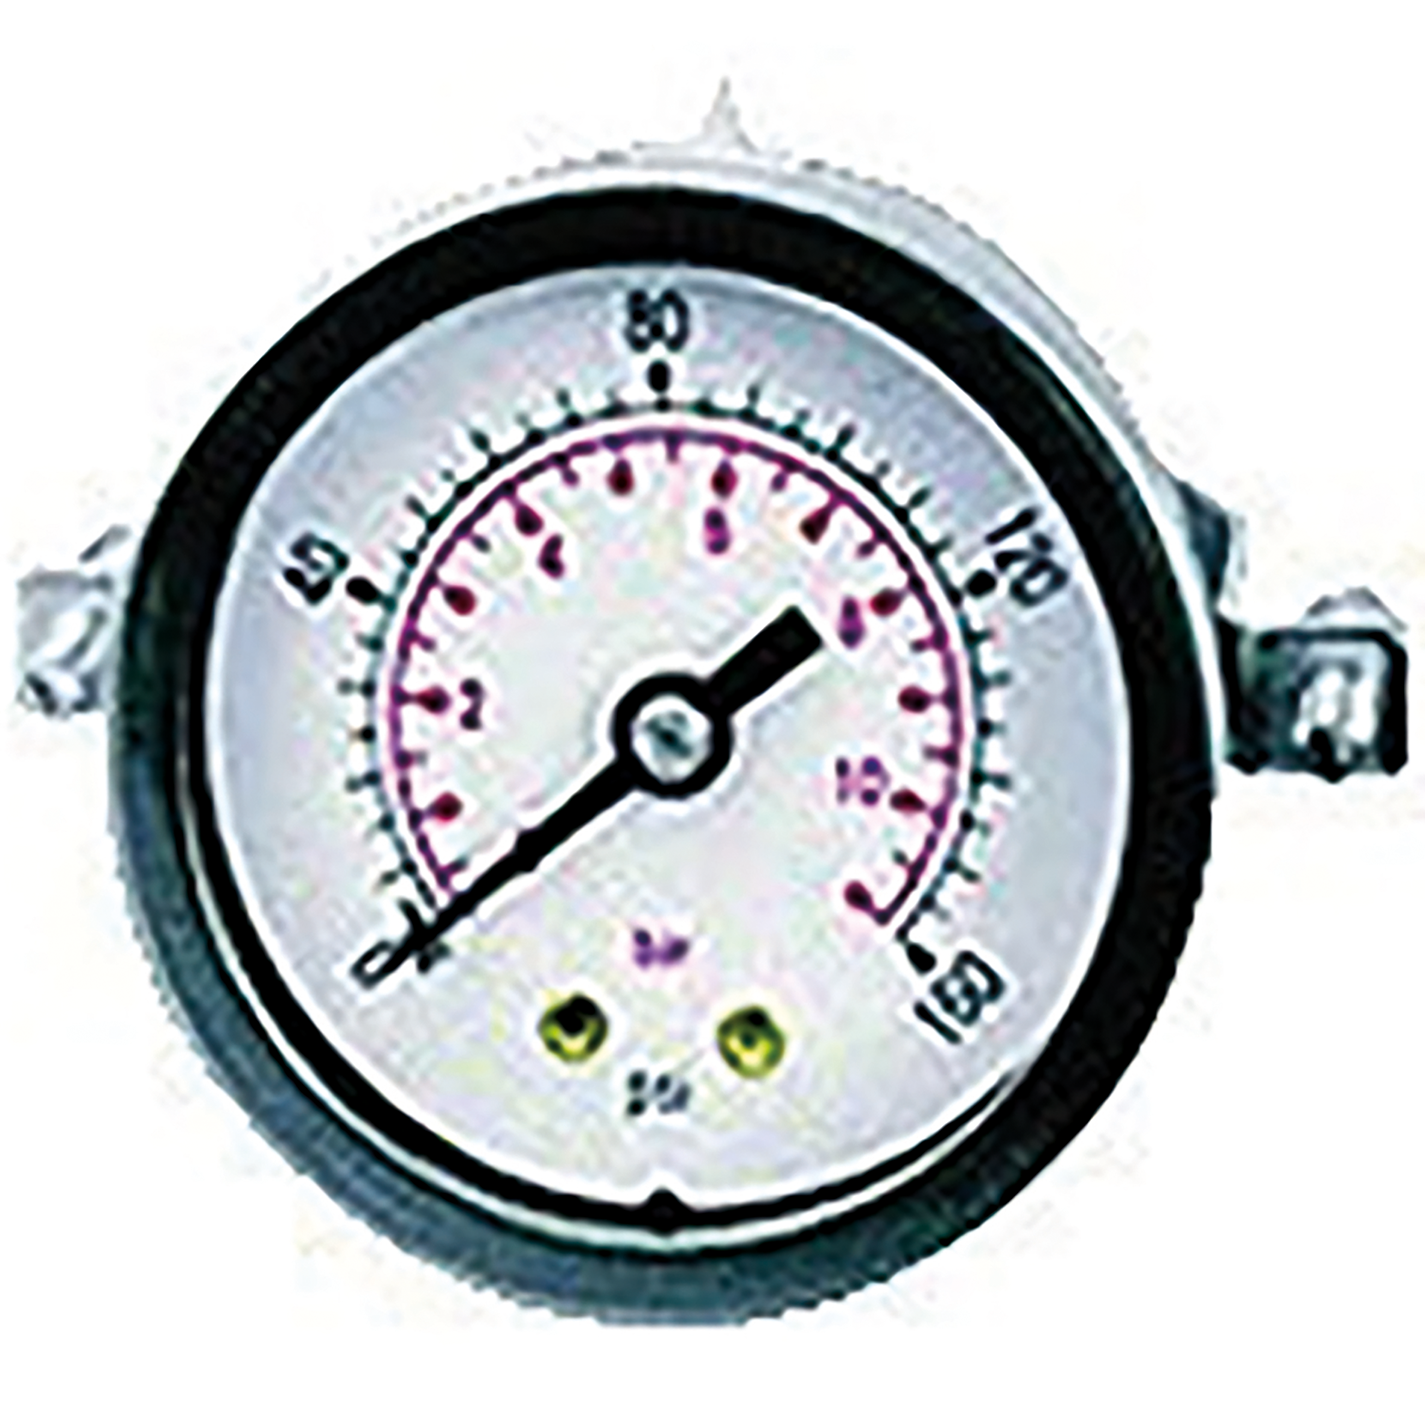 1/8" BSPT Panel Mounted Dry Gauge 40mm Diameter